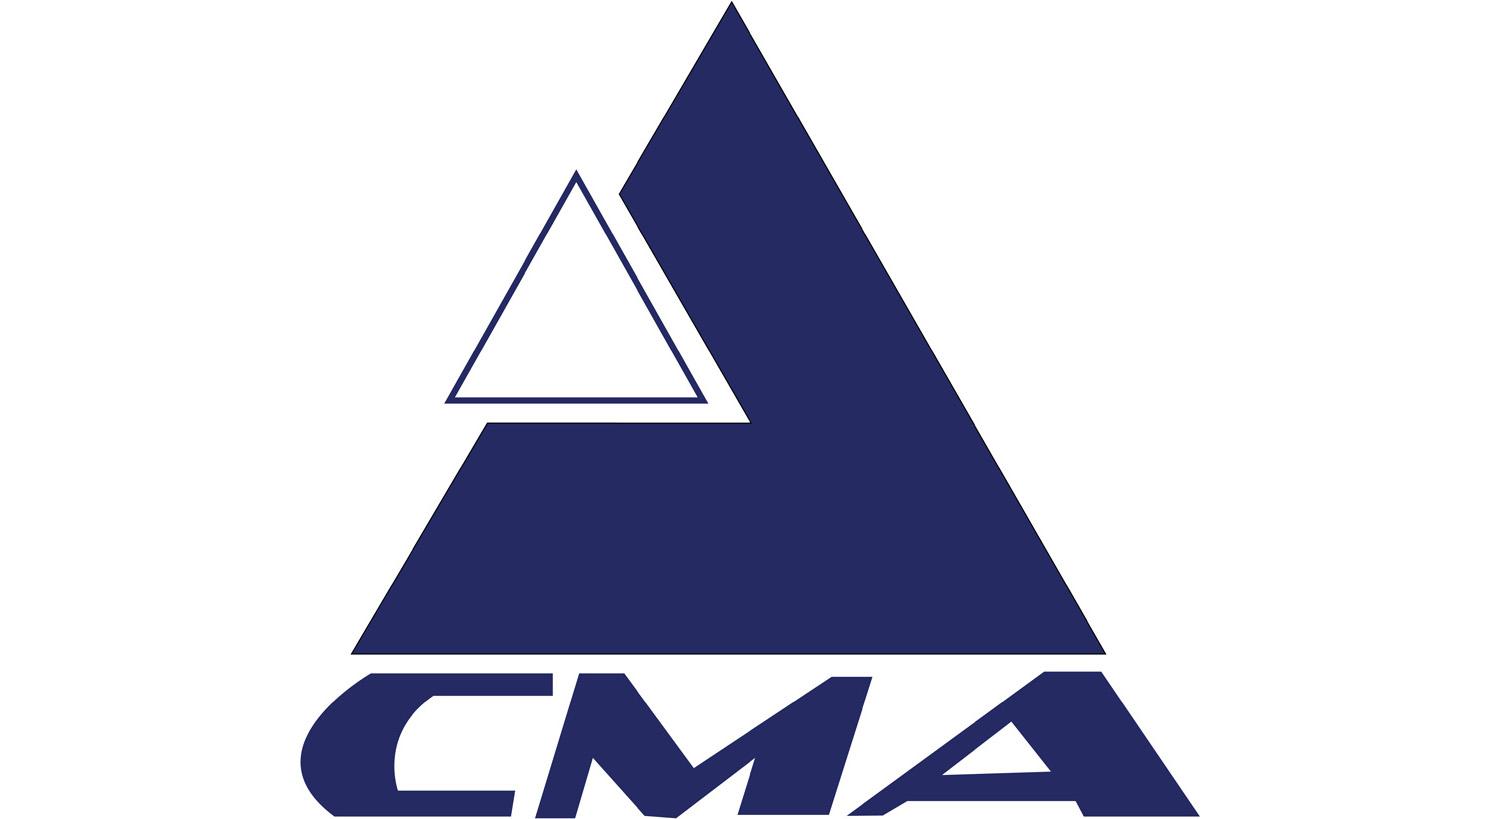 CMA-logo-2017.jpg